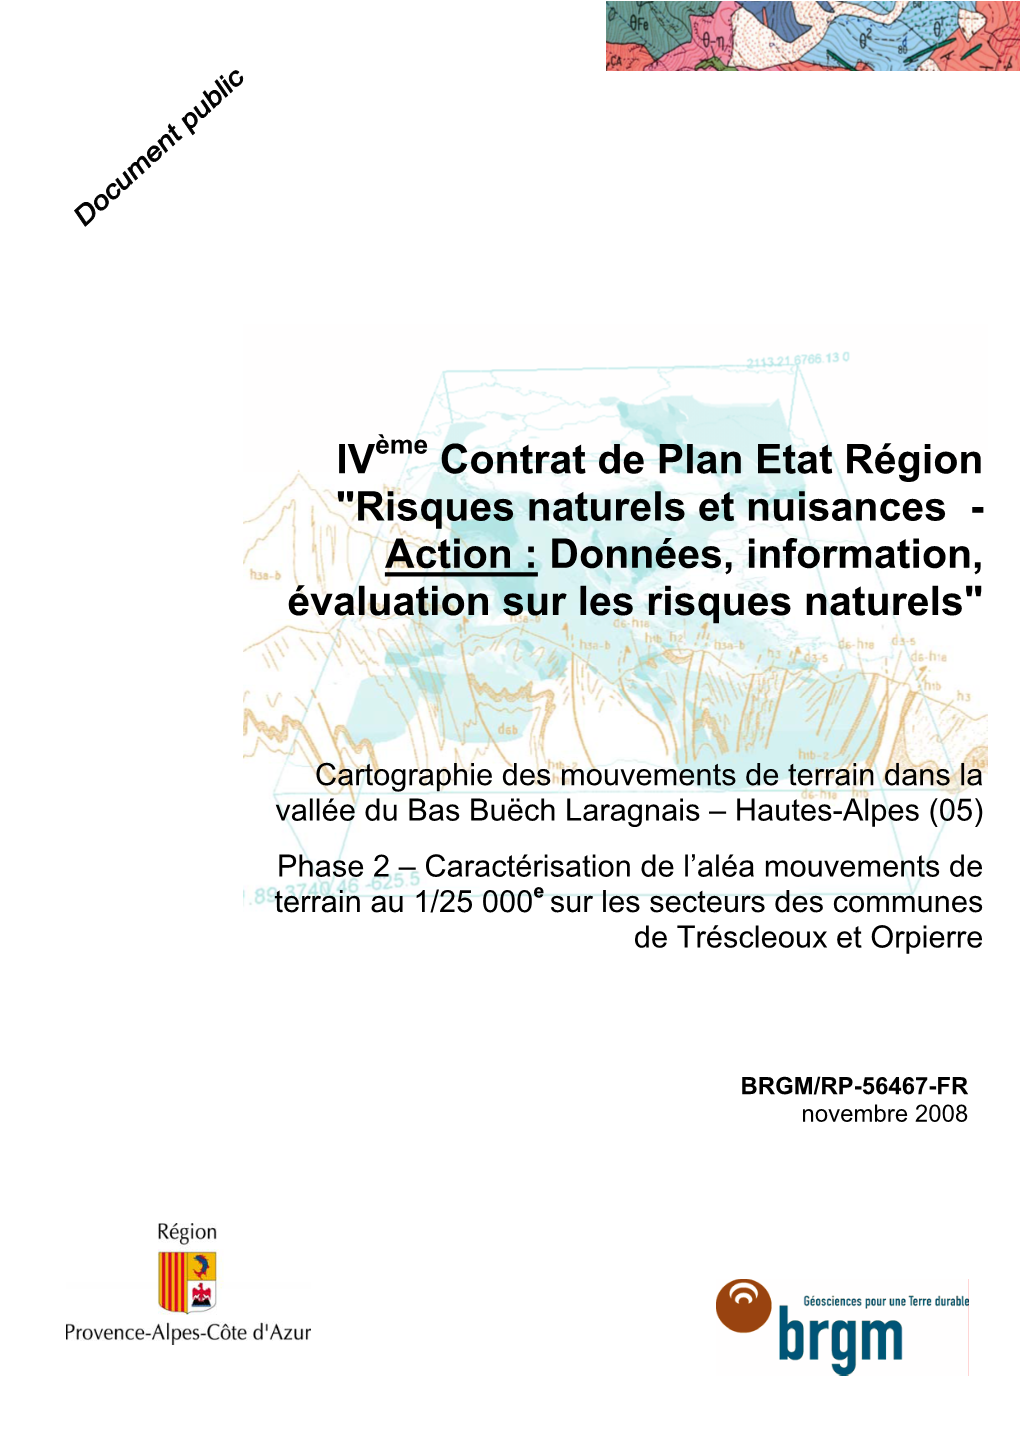 IV Contrat De Plan Etat Région